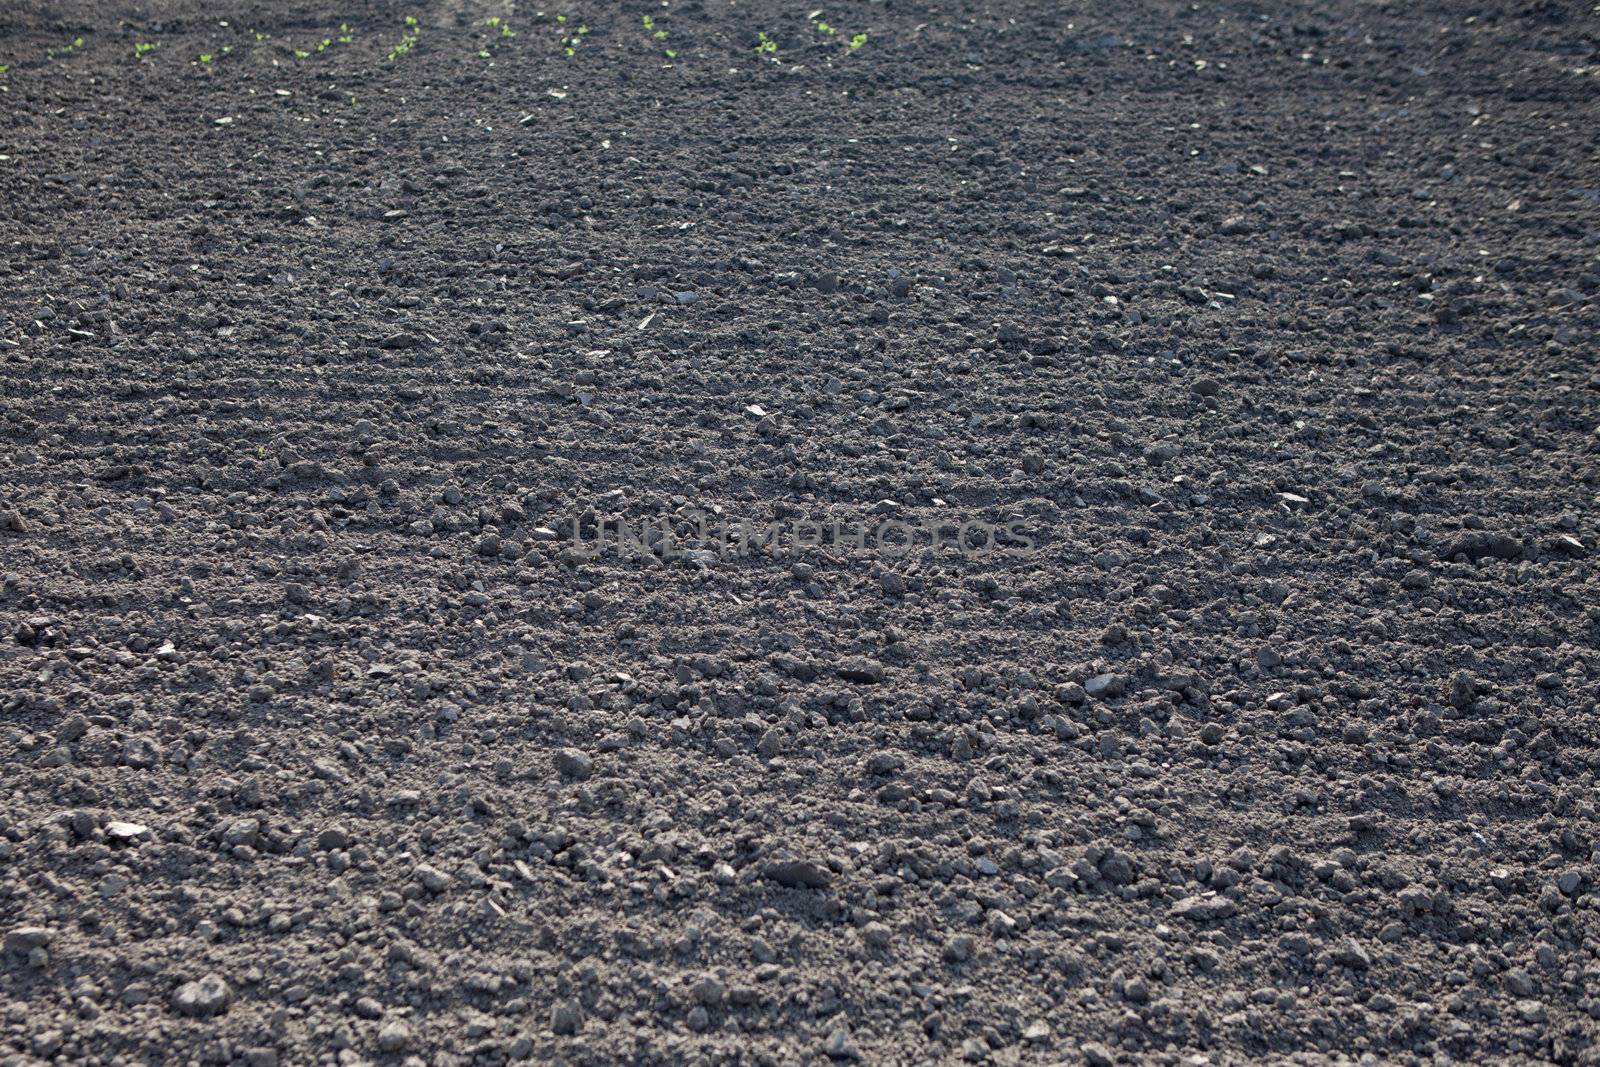 plowed field by vsurkov